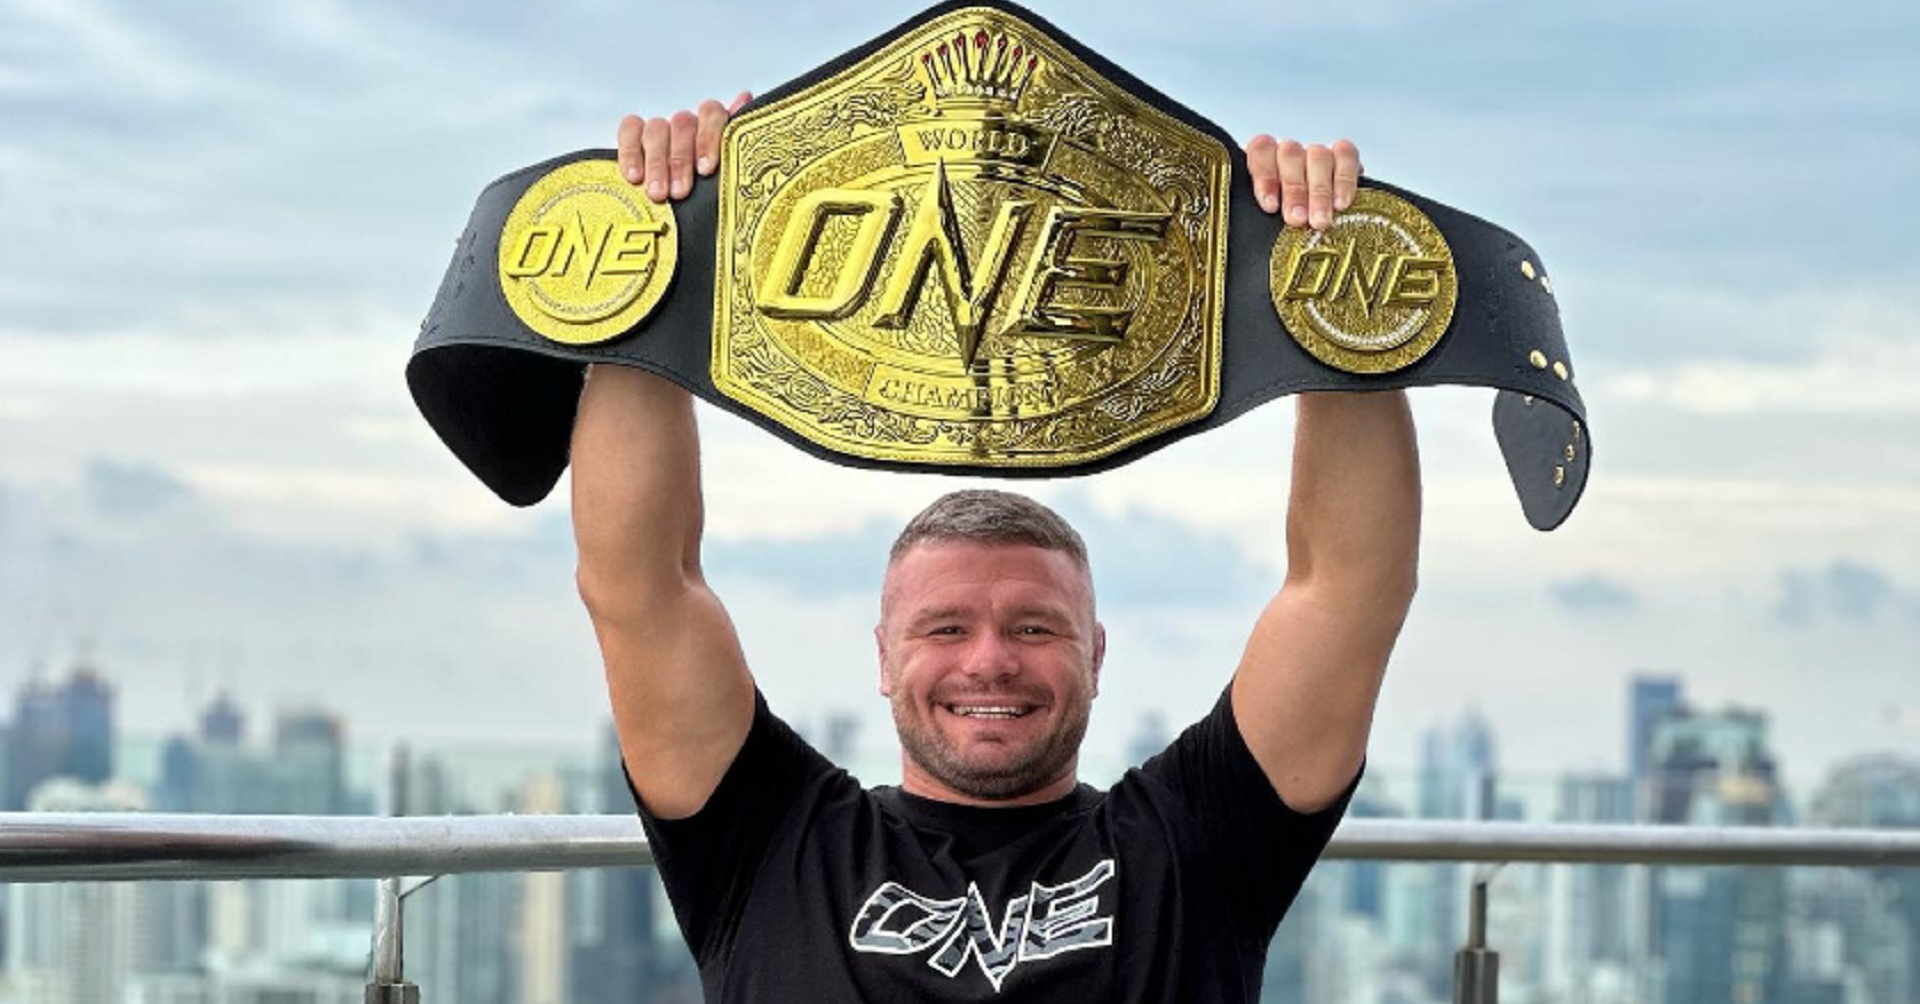 Непобеденият ONE шампион в тежка категория: Няма да напусна ONE за UFC